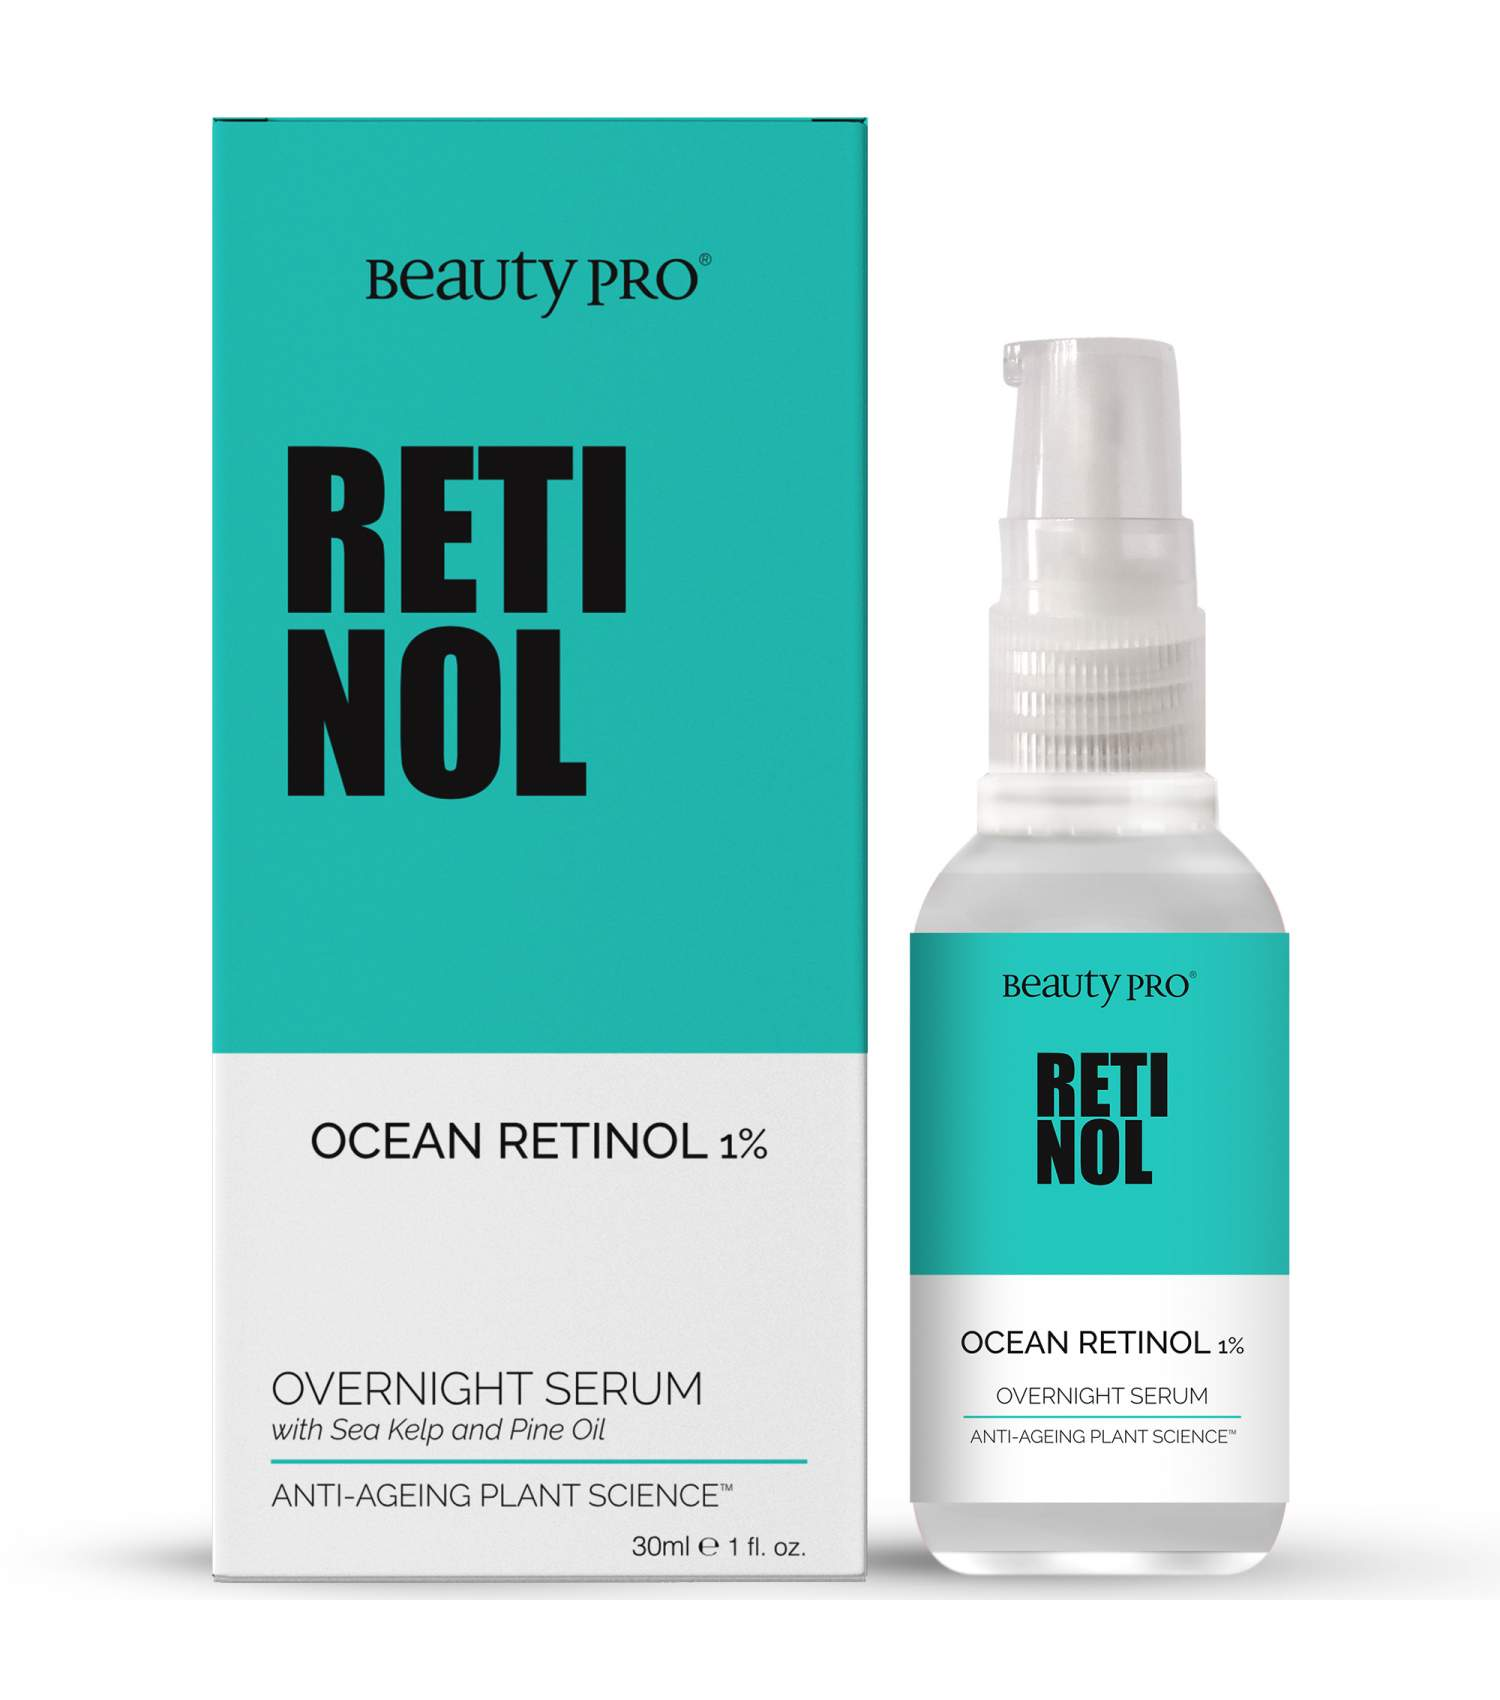 BeautyPro RETINOL 1% Overnight Serum